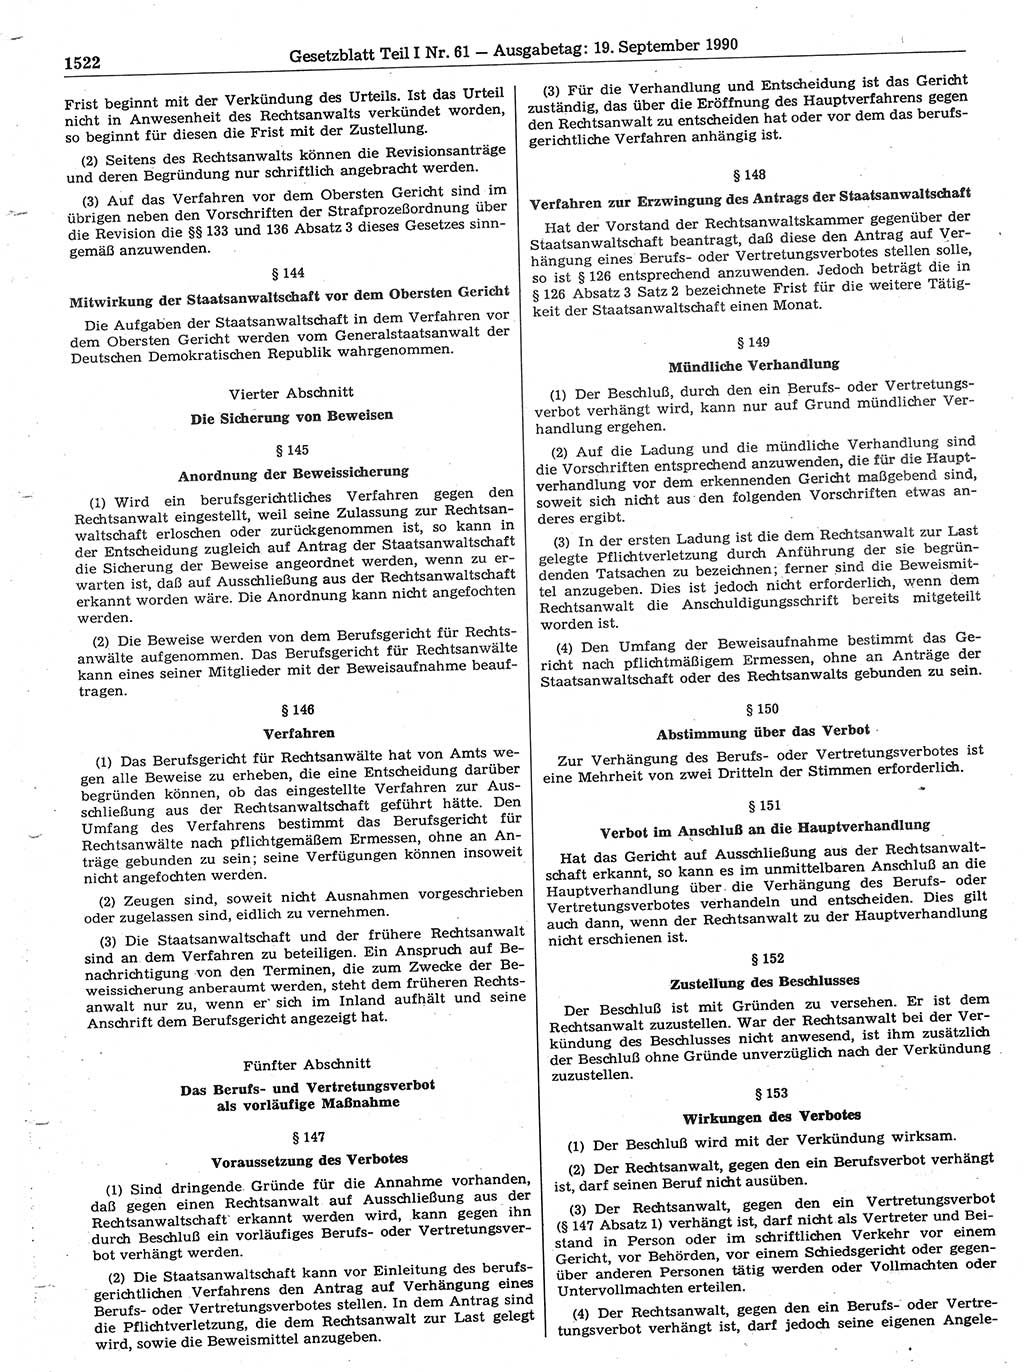 Gesetzblatt (GBl.) der Deutschen Demokratischen Republik (DDR) Teil Ⅰ 1990, Seite 1522 (GBl. DDR Ⅰ 1990, S. 1522)